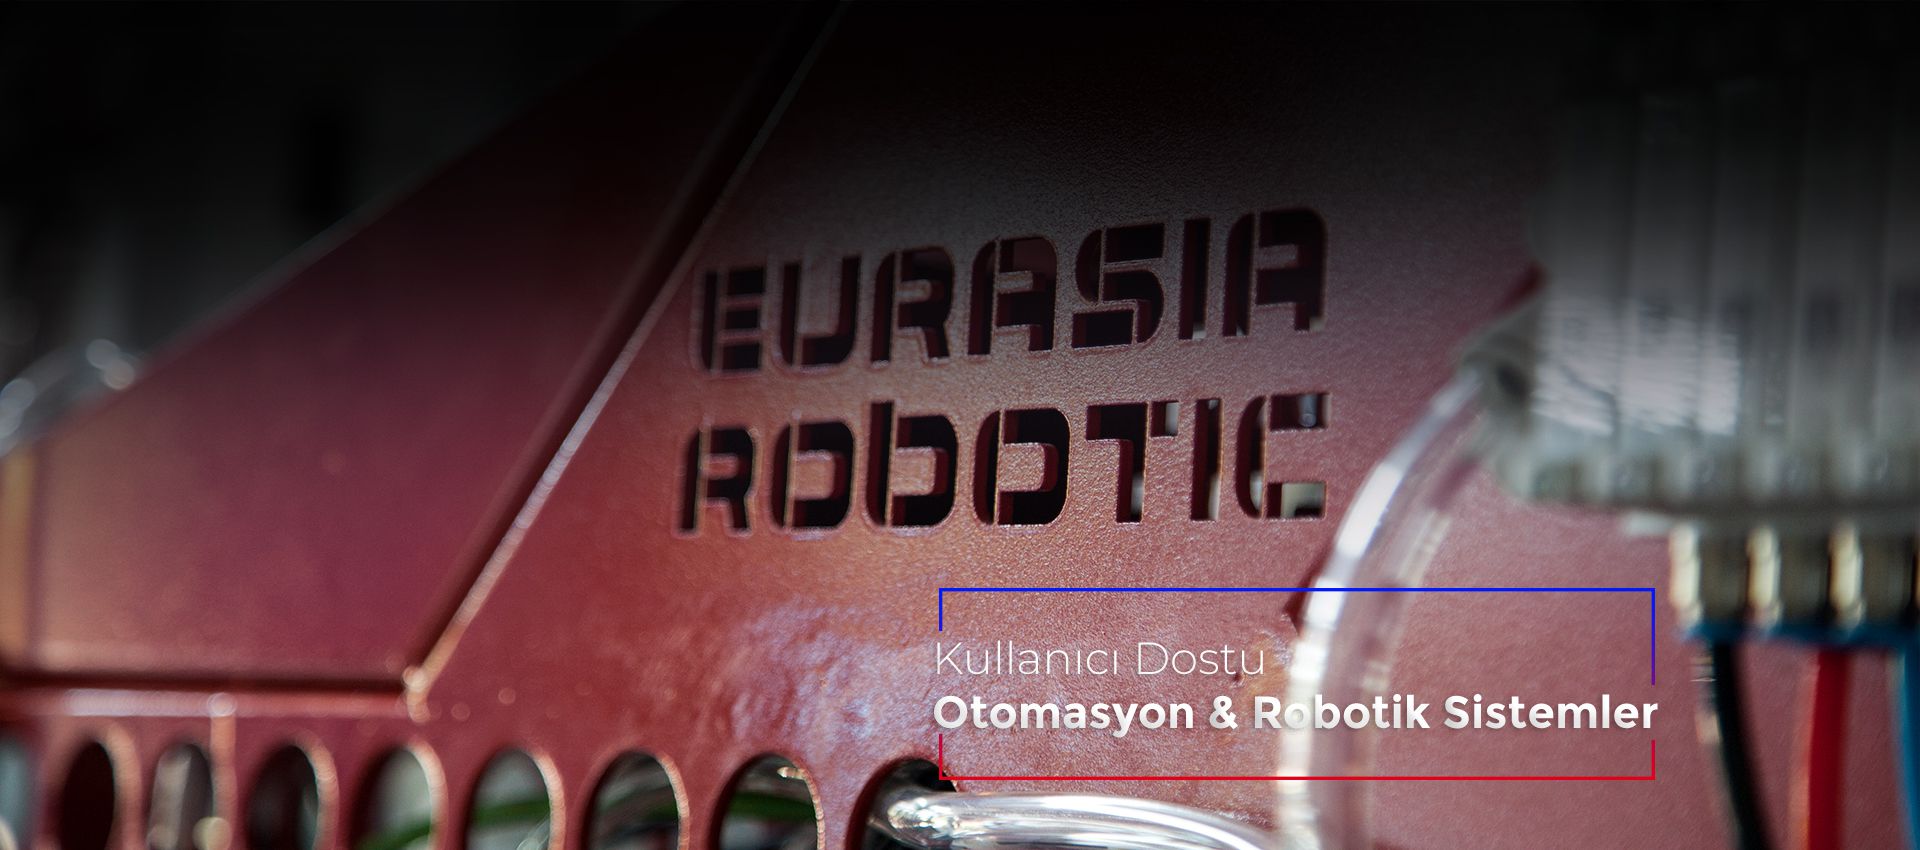 Eurasia Robotic